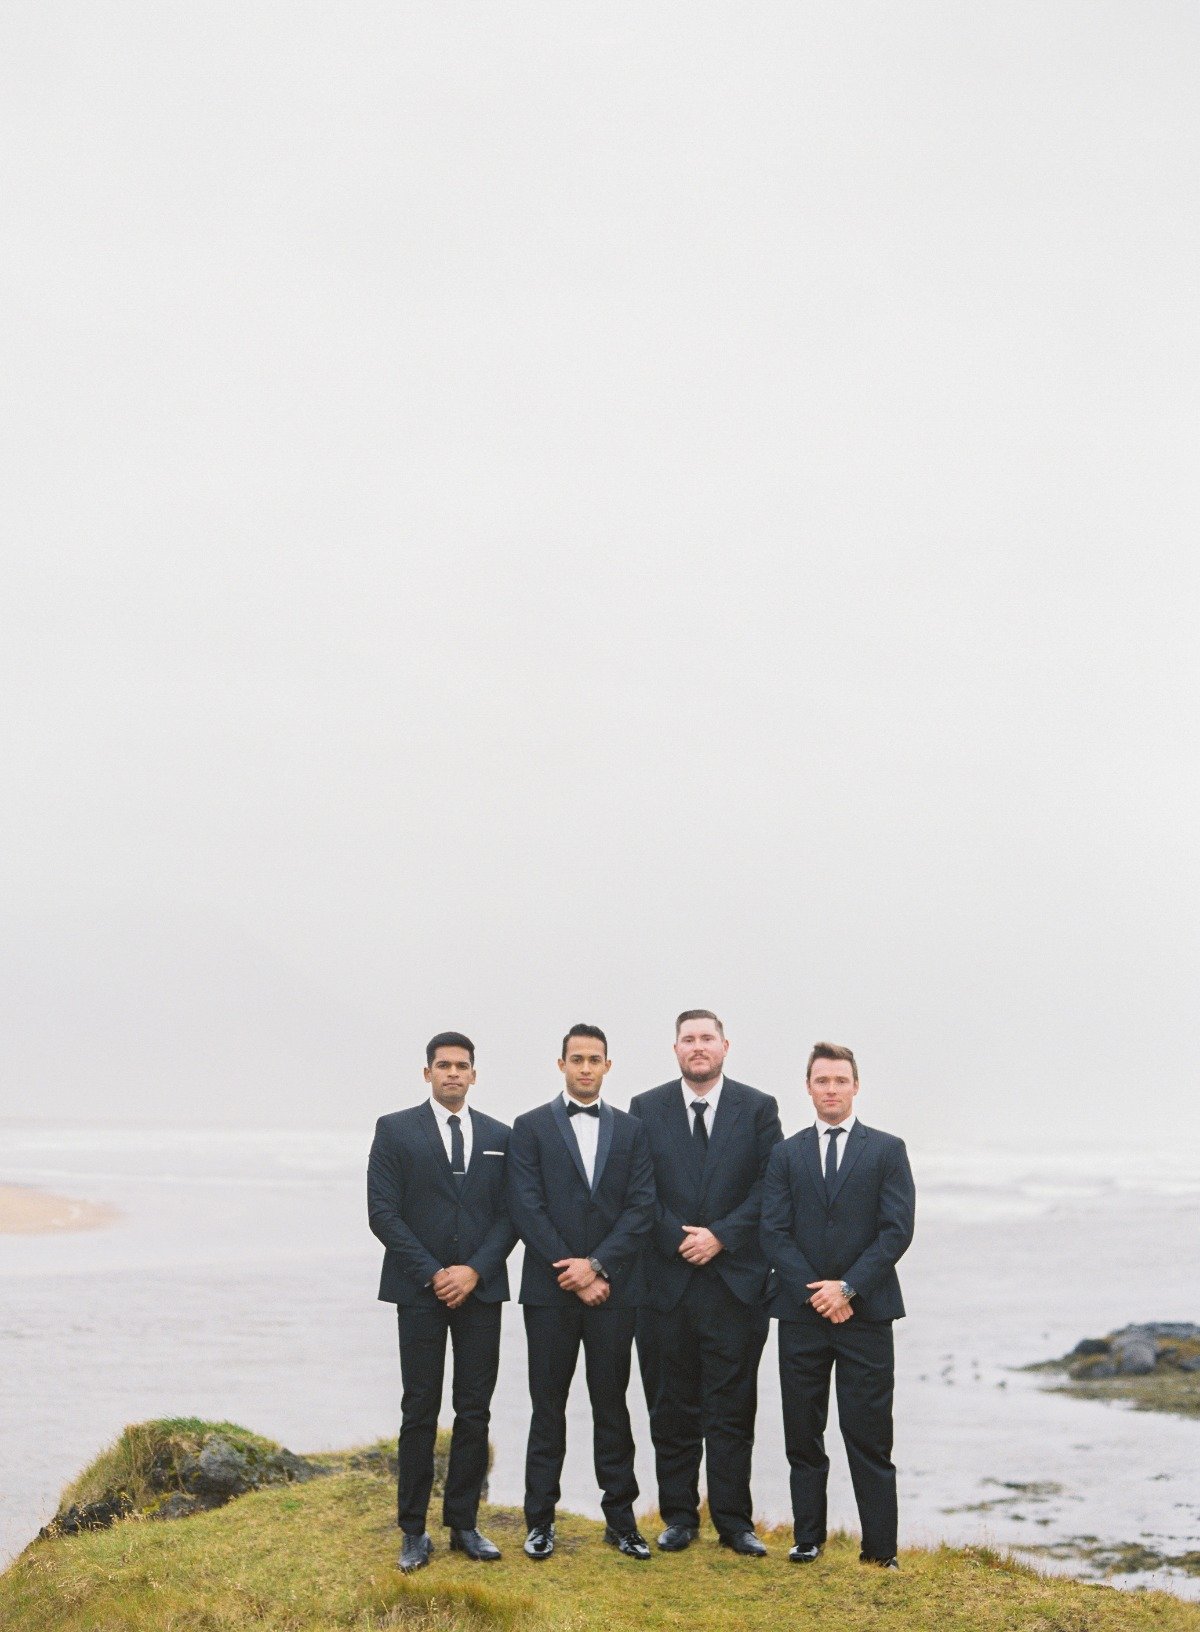 Groomsmen at Iceland destination wedding